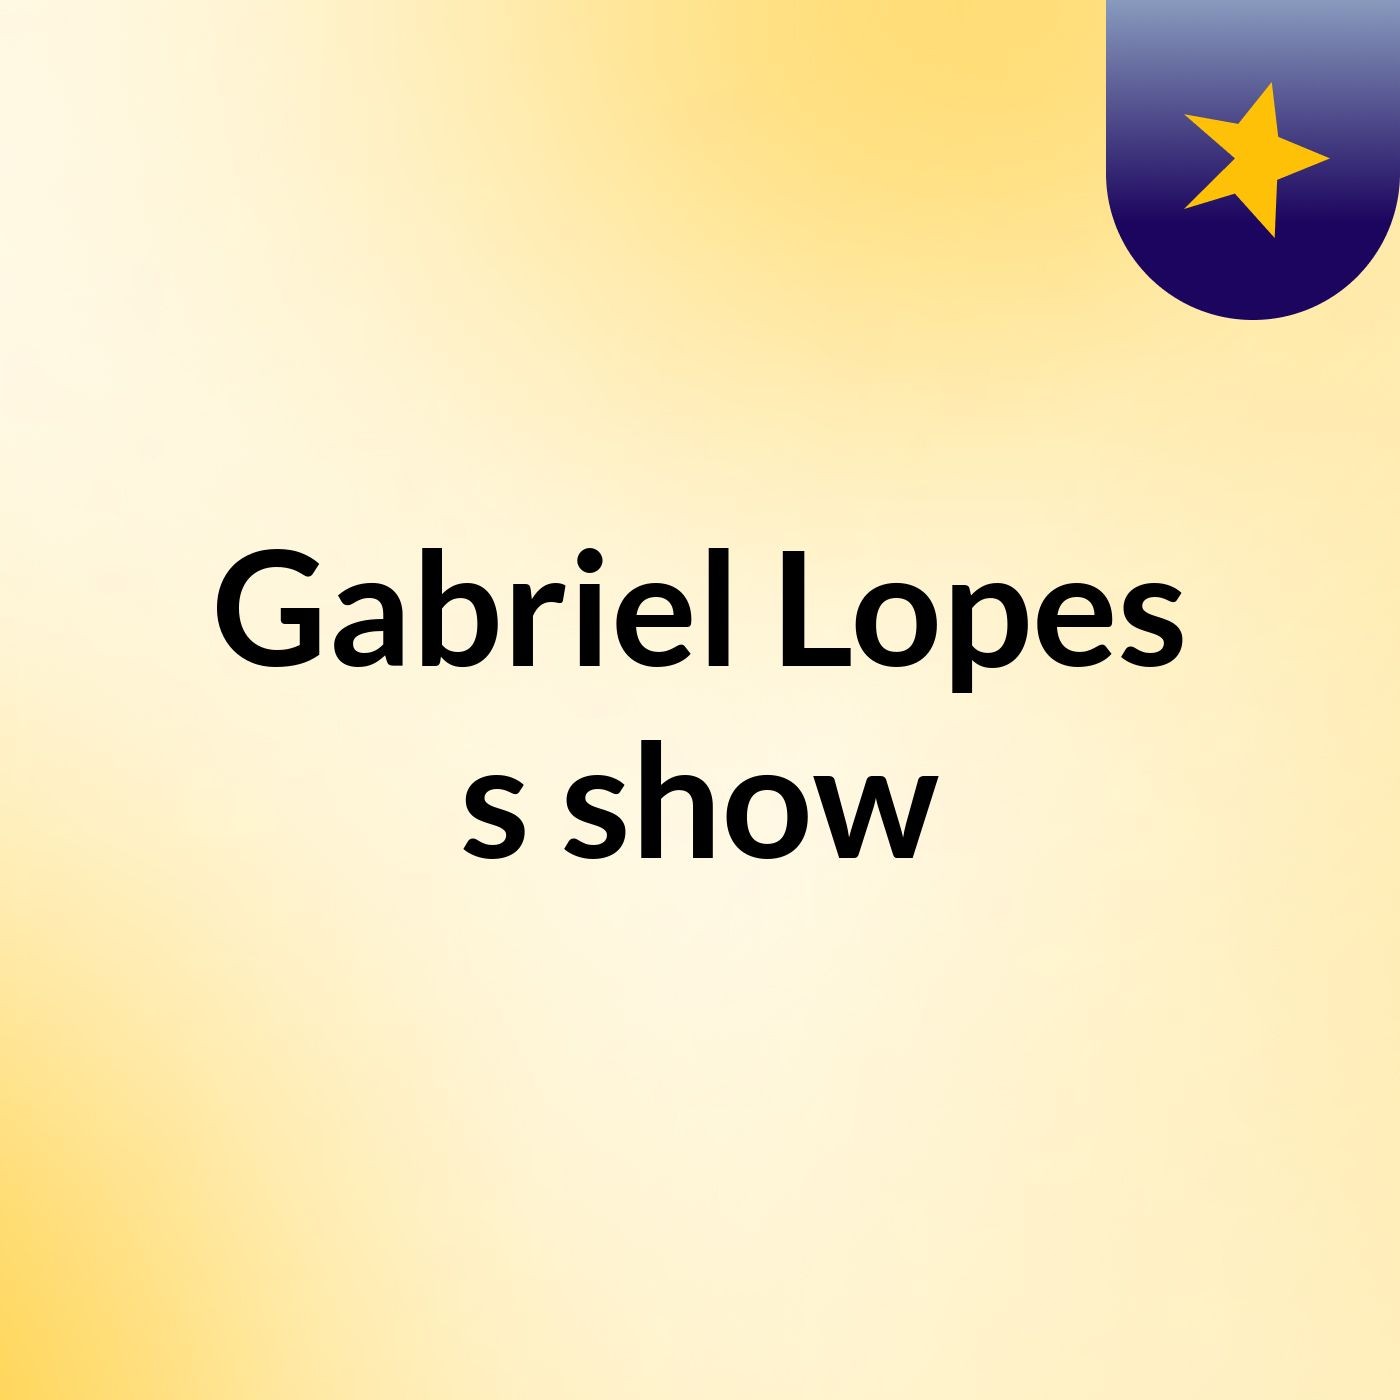 Gabriel Lopes's show